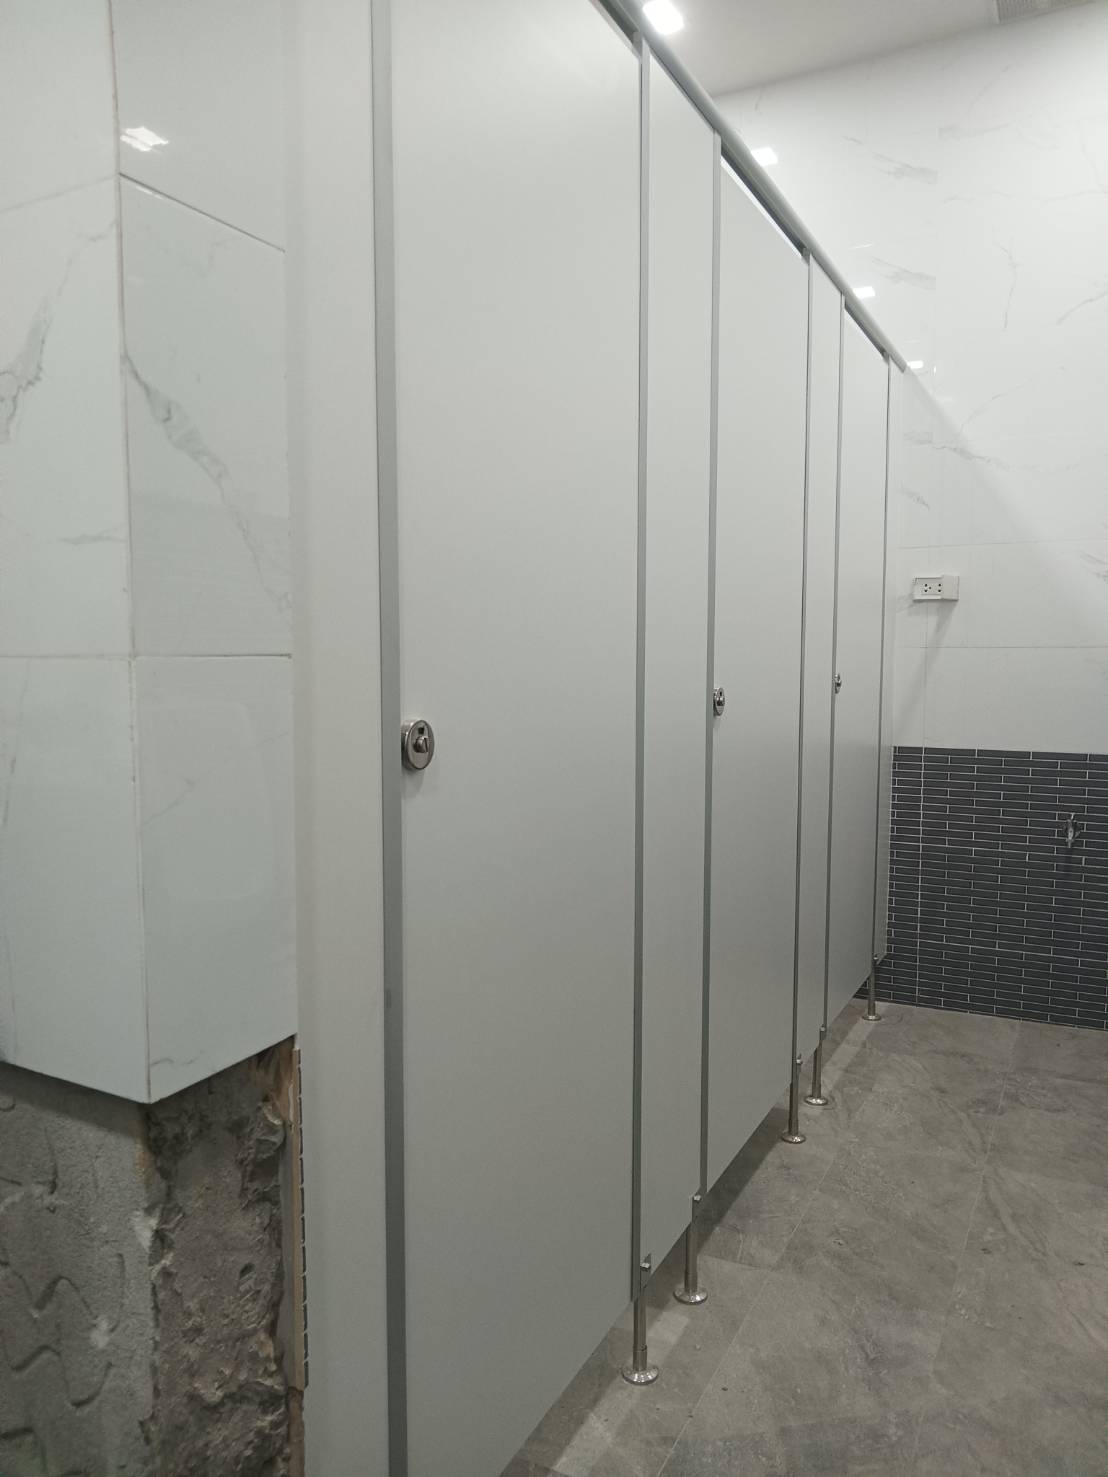 ติดตั้งผนังกั้นห้องน้ำ สำหนักงานสรรพากรพื้นที่สาขาเมืองสมุทรสาคร 1 สีเทา